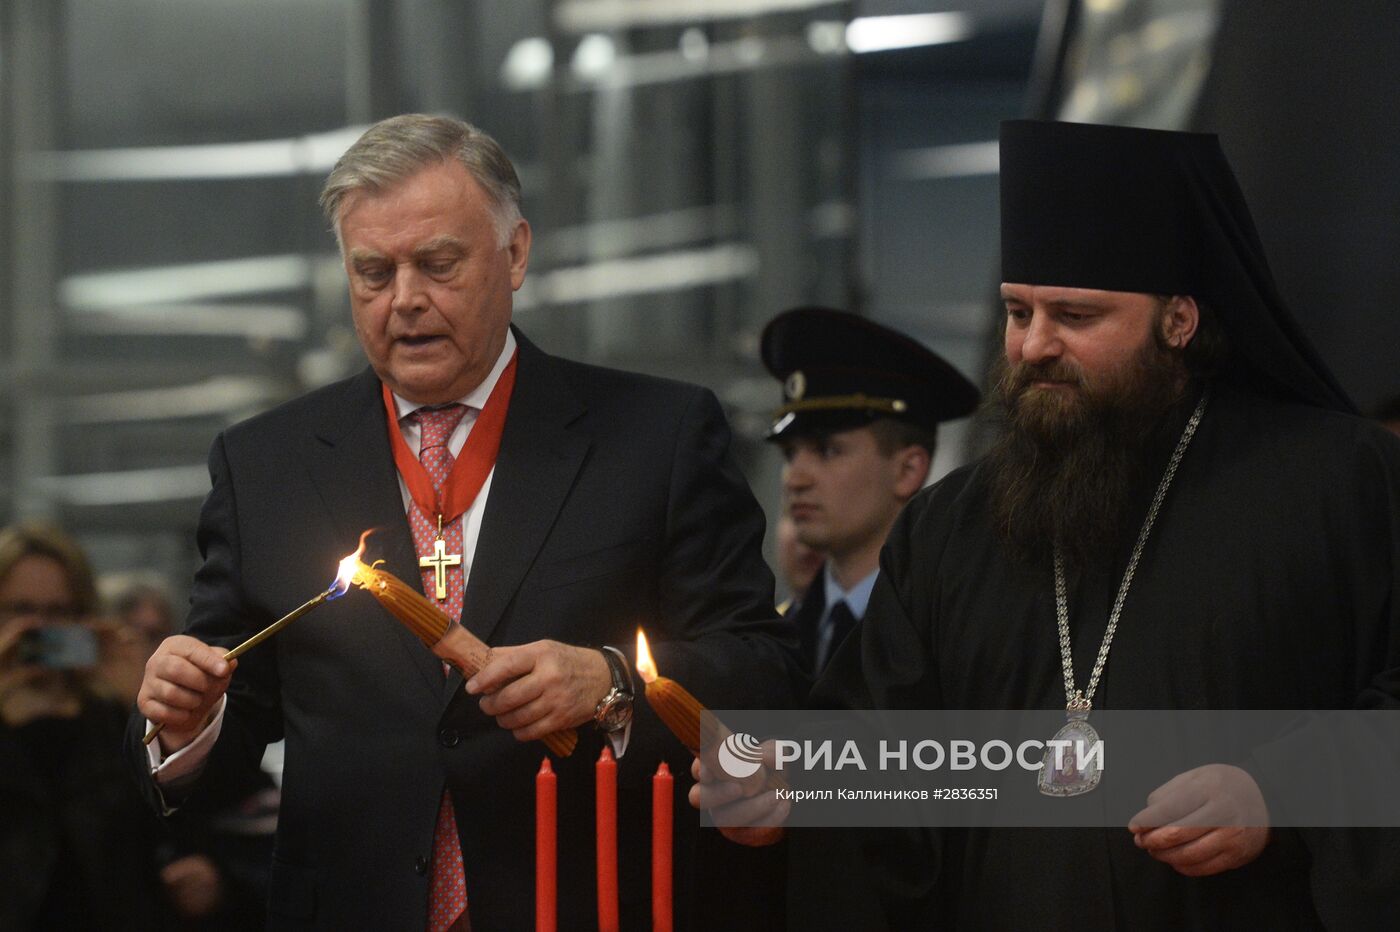 Встреча Благодатного огня в аэропорту Внуково